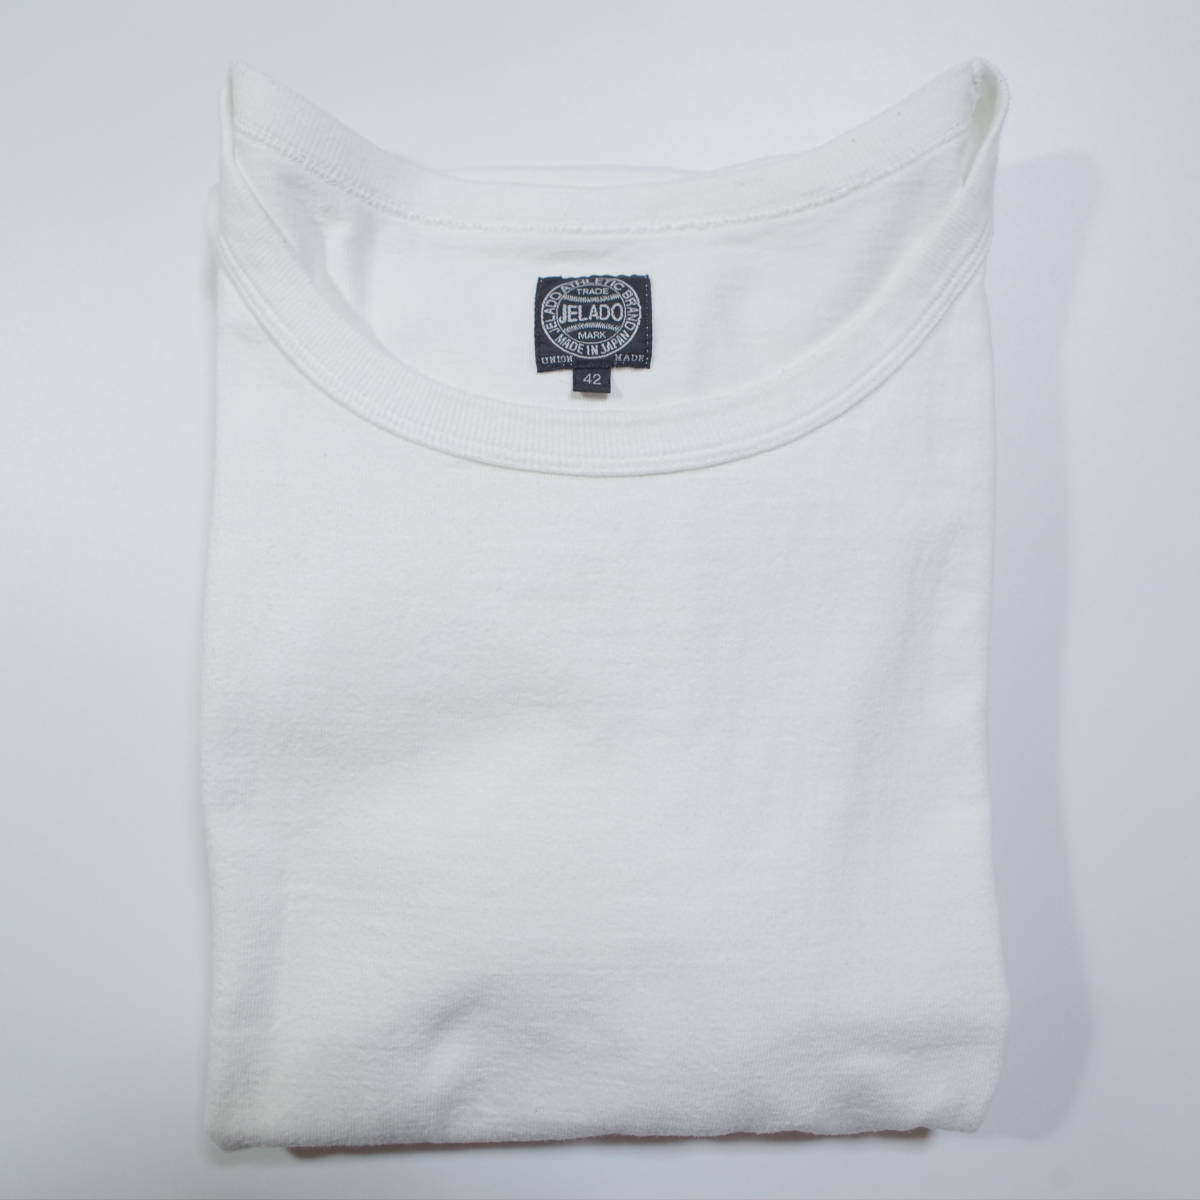 送料無料 JELADO Vintage Neck(ヴィンテージネック) Tee ジェラード Tシャツ 42 ホワイト 白T_画像4